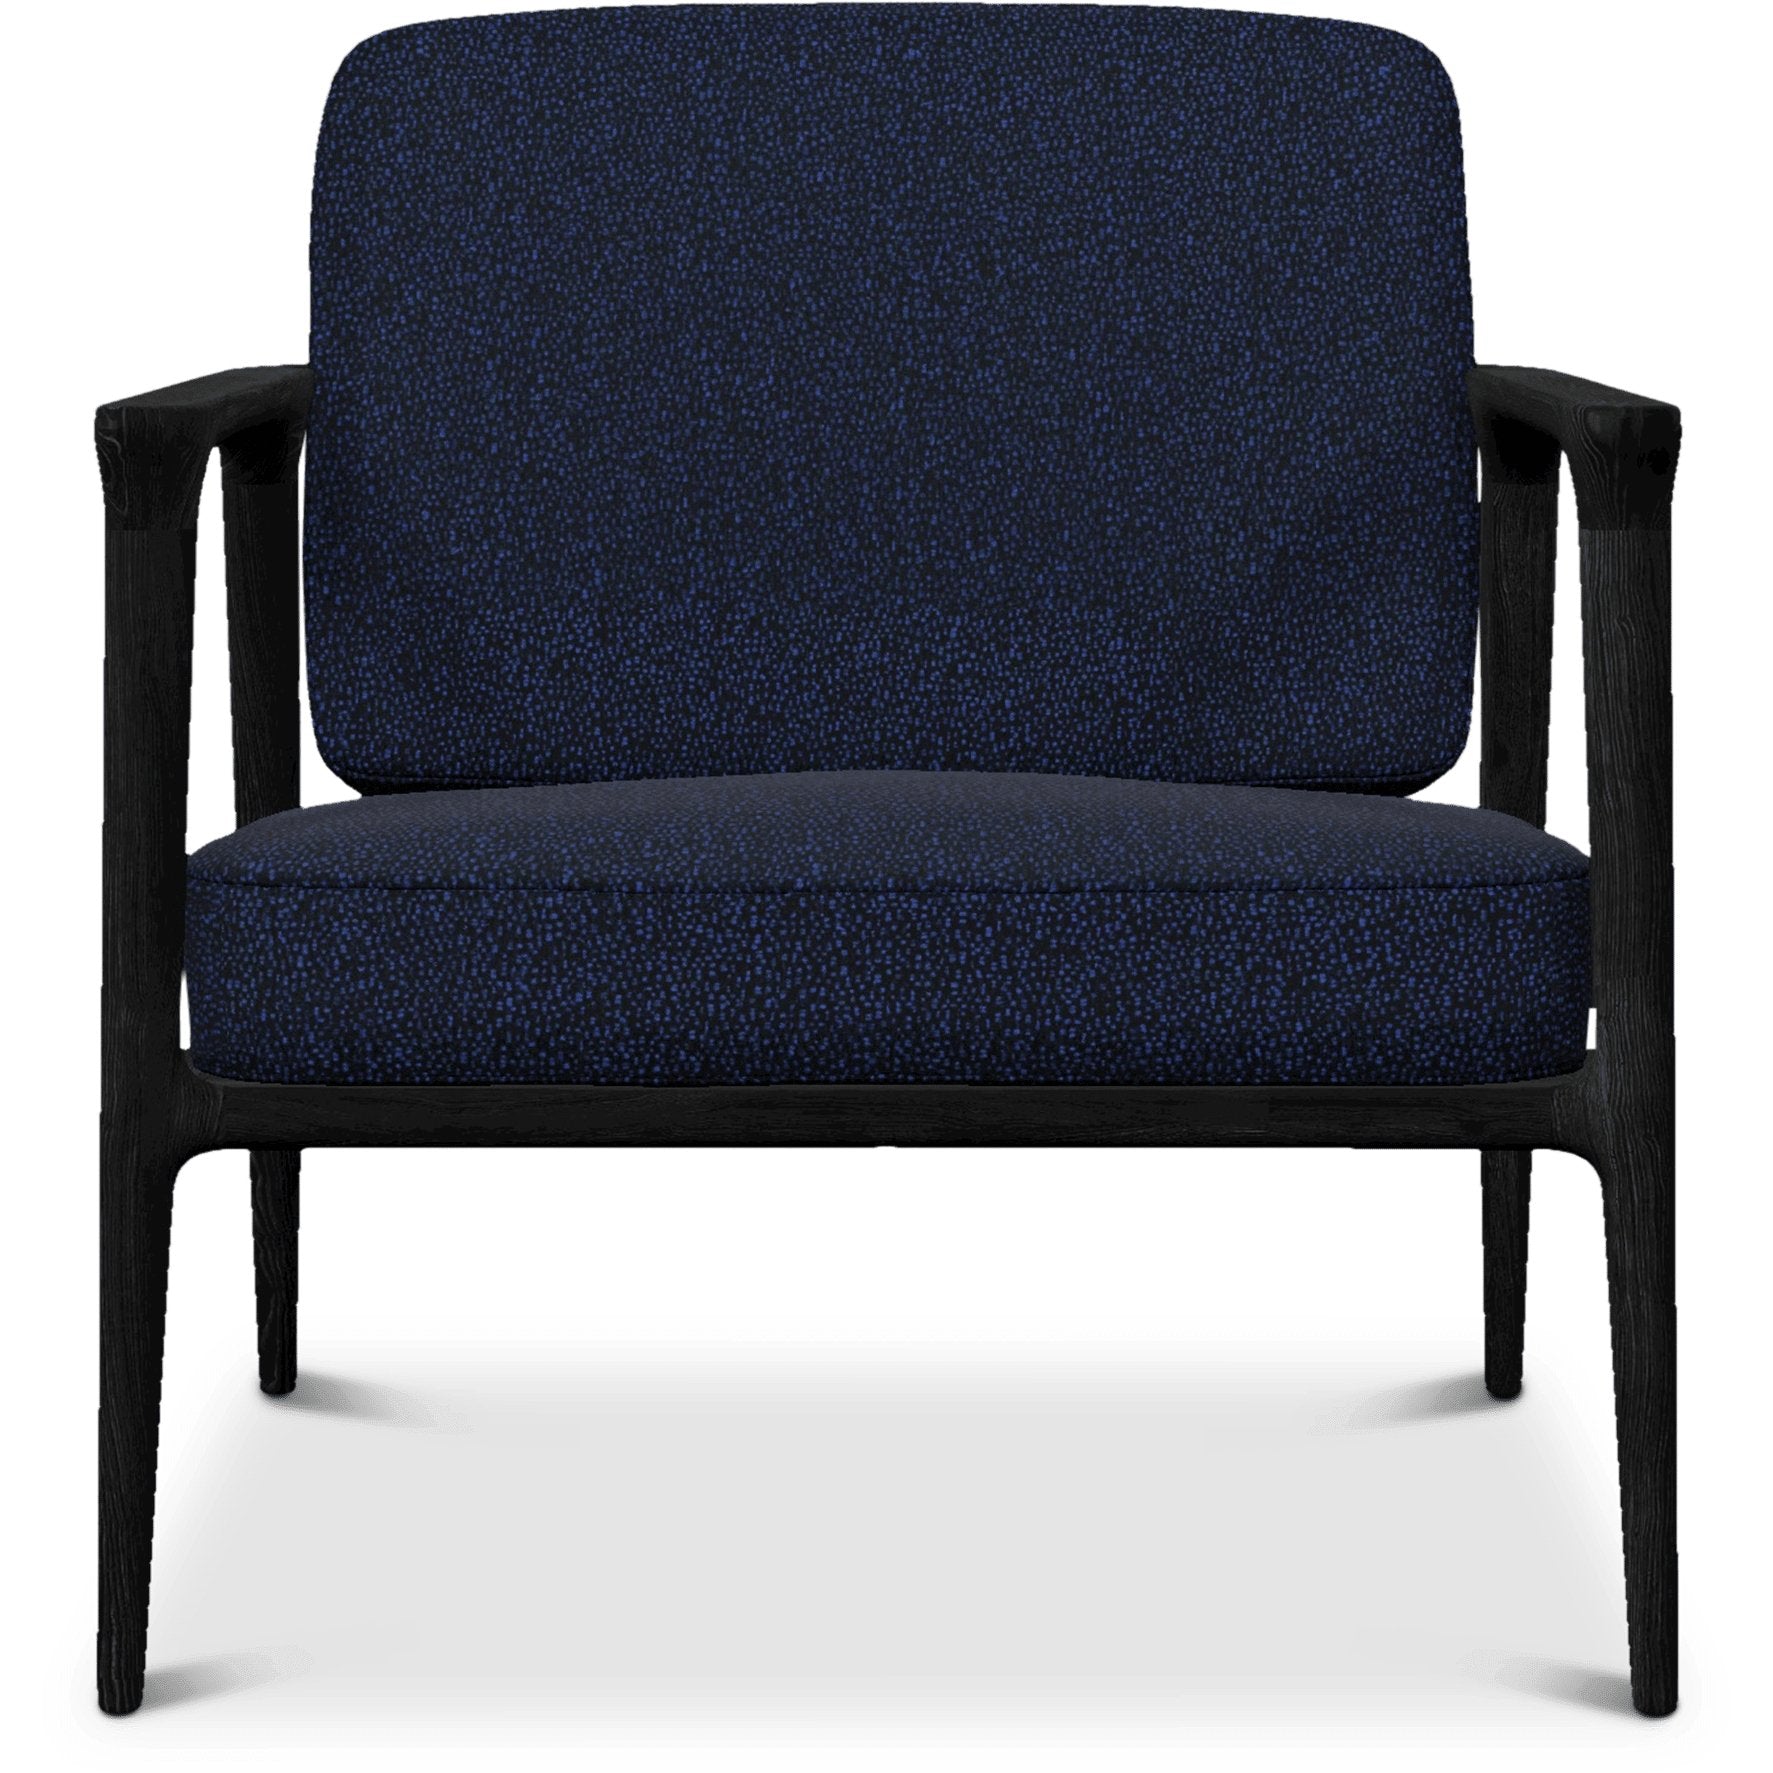 Zio Lounge Chair - Curated Furniture $2000+, armchair, blue, brown, chair, lounge chair, Moooi, Print